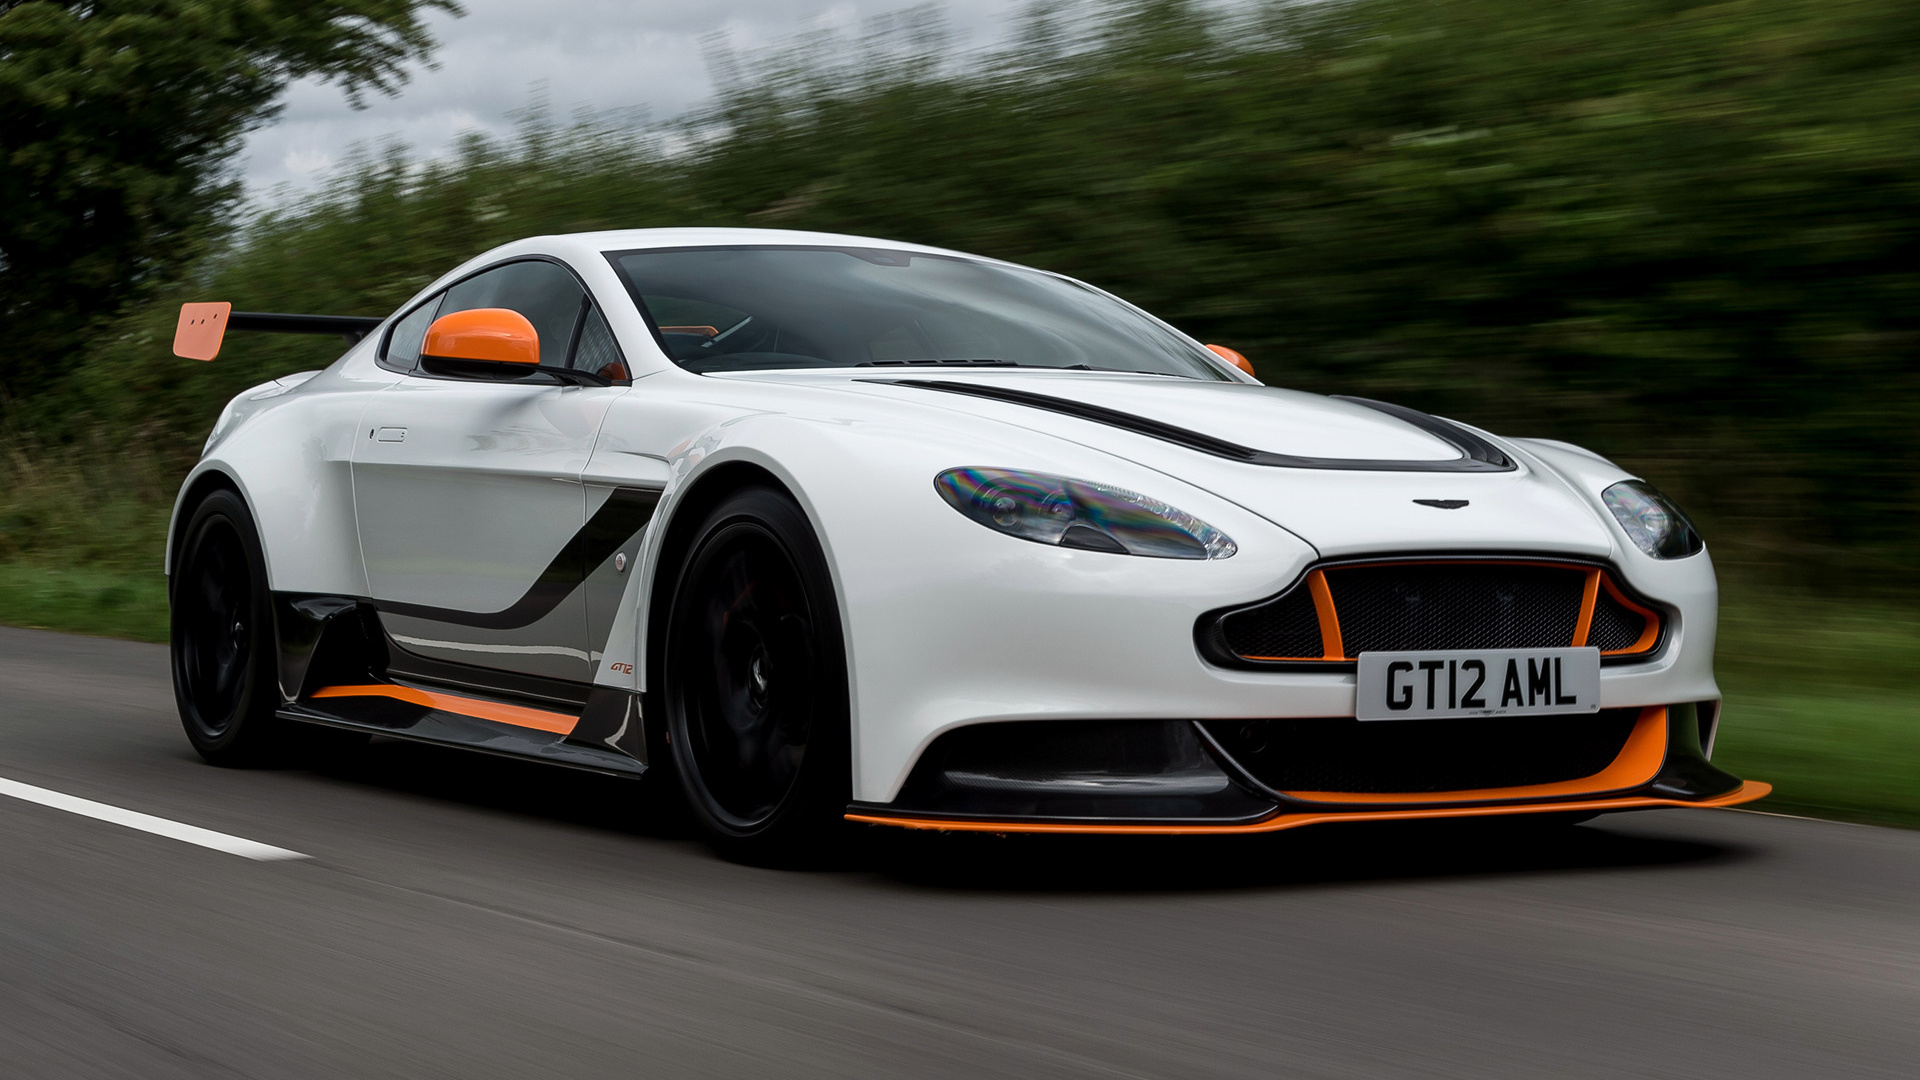 Cruising In Style: The 2015 Aston Martin Vantage GT12